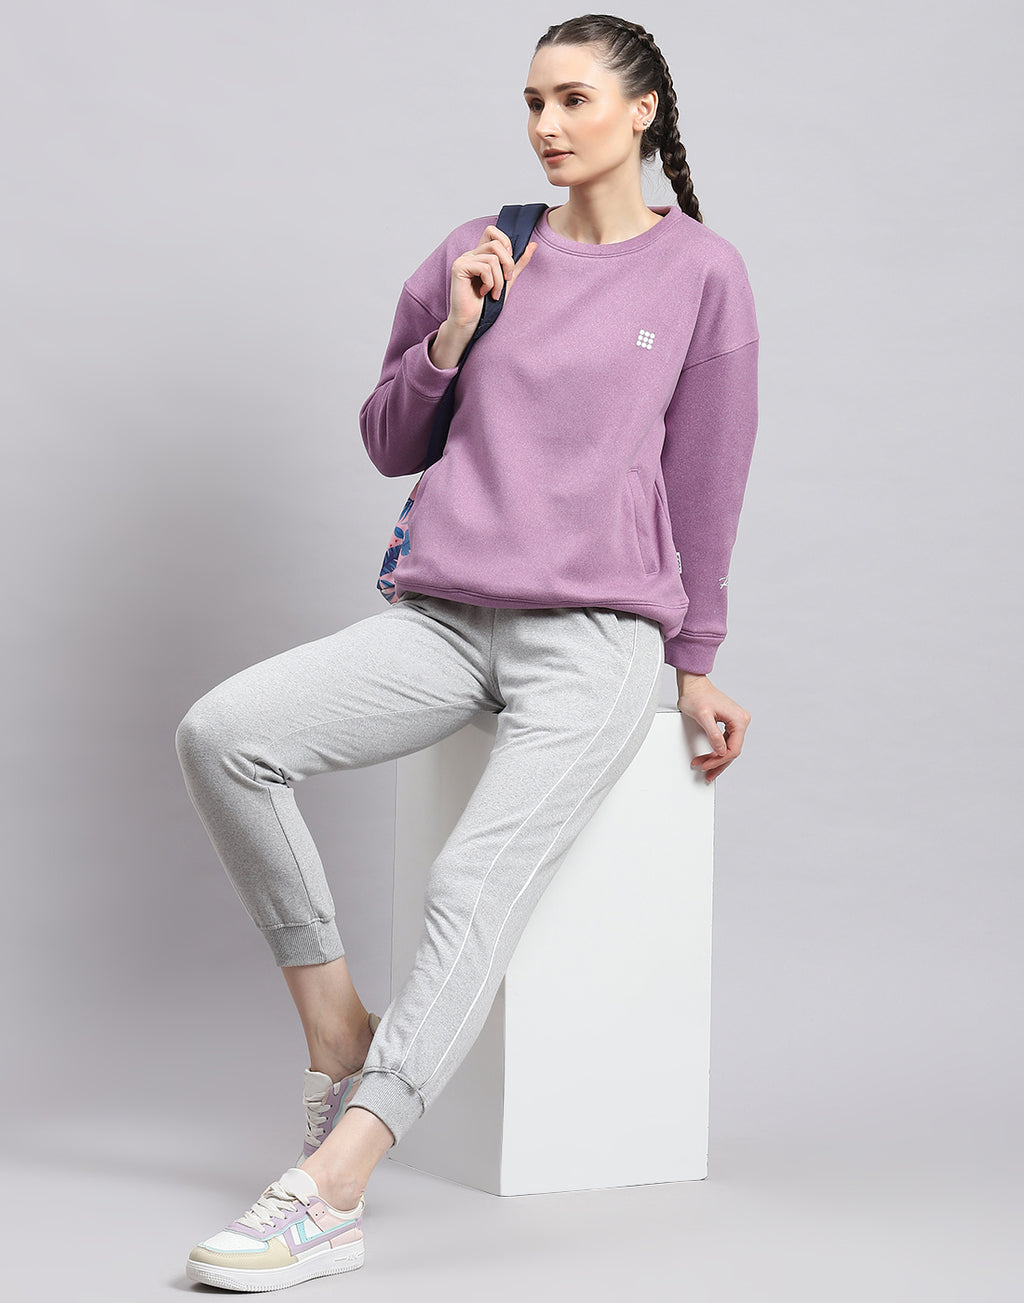 Buy Girls Purple Solid Regular Fit Sweatshirt Online - 760197